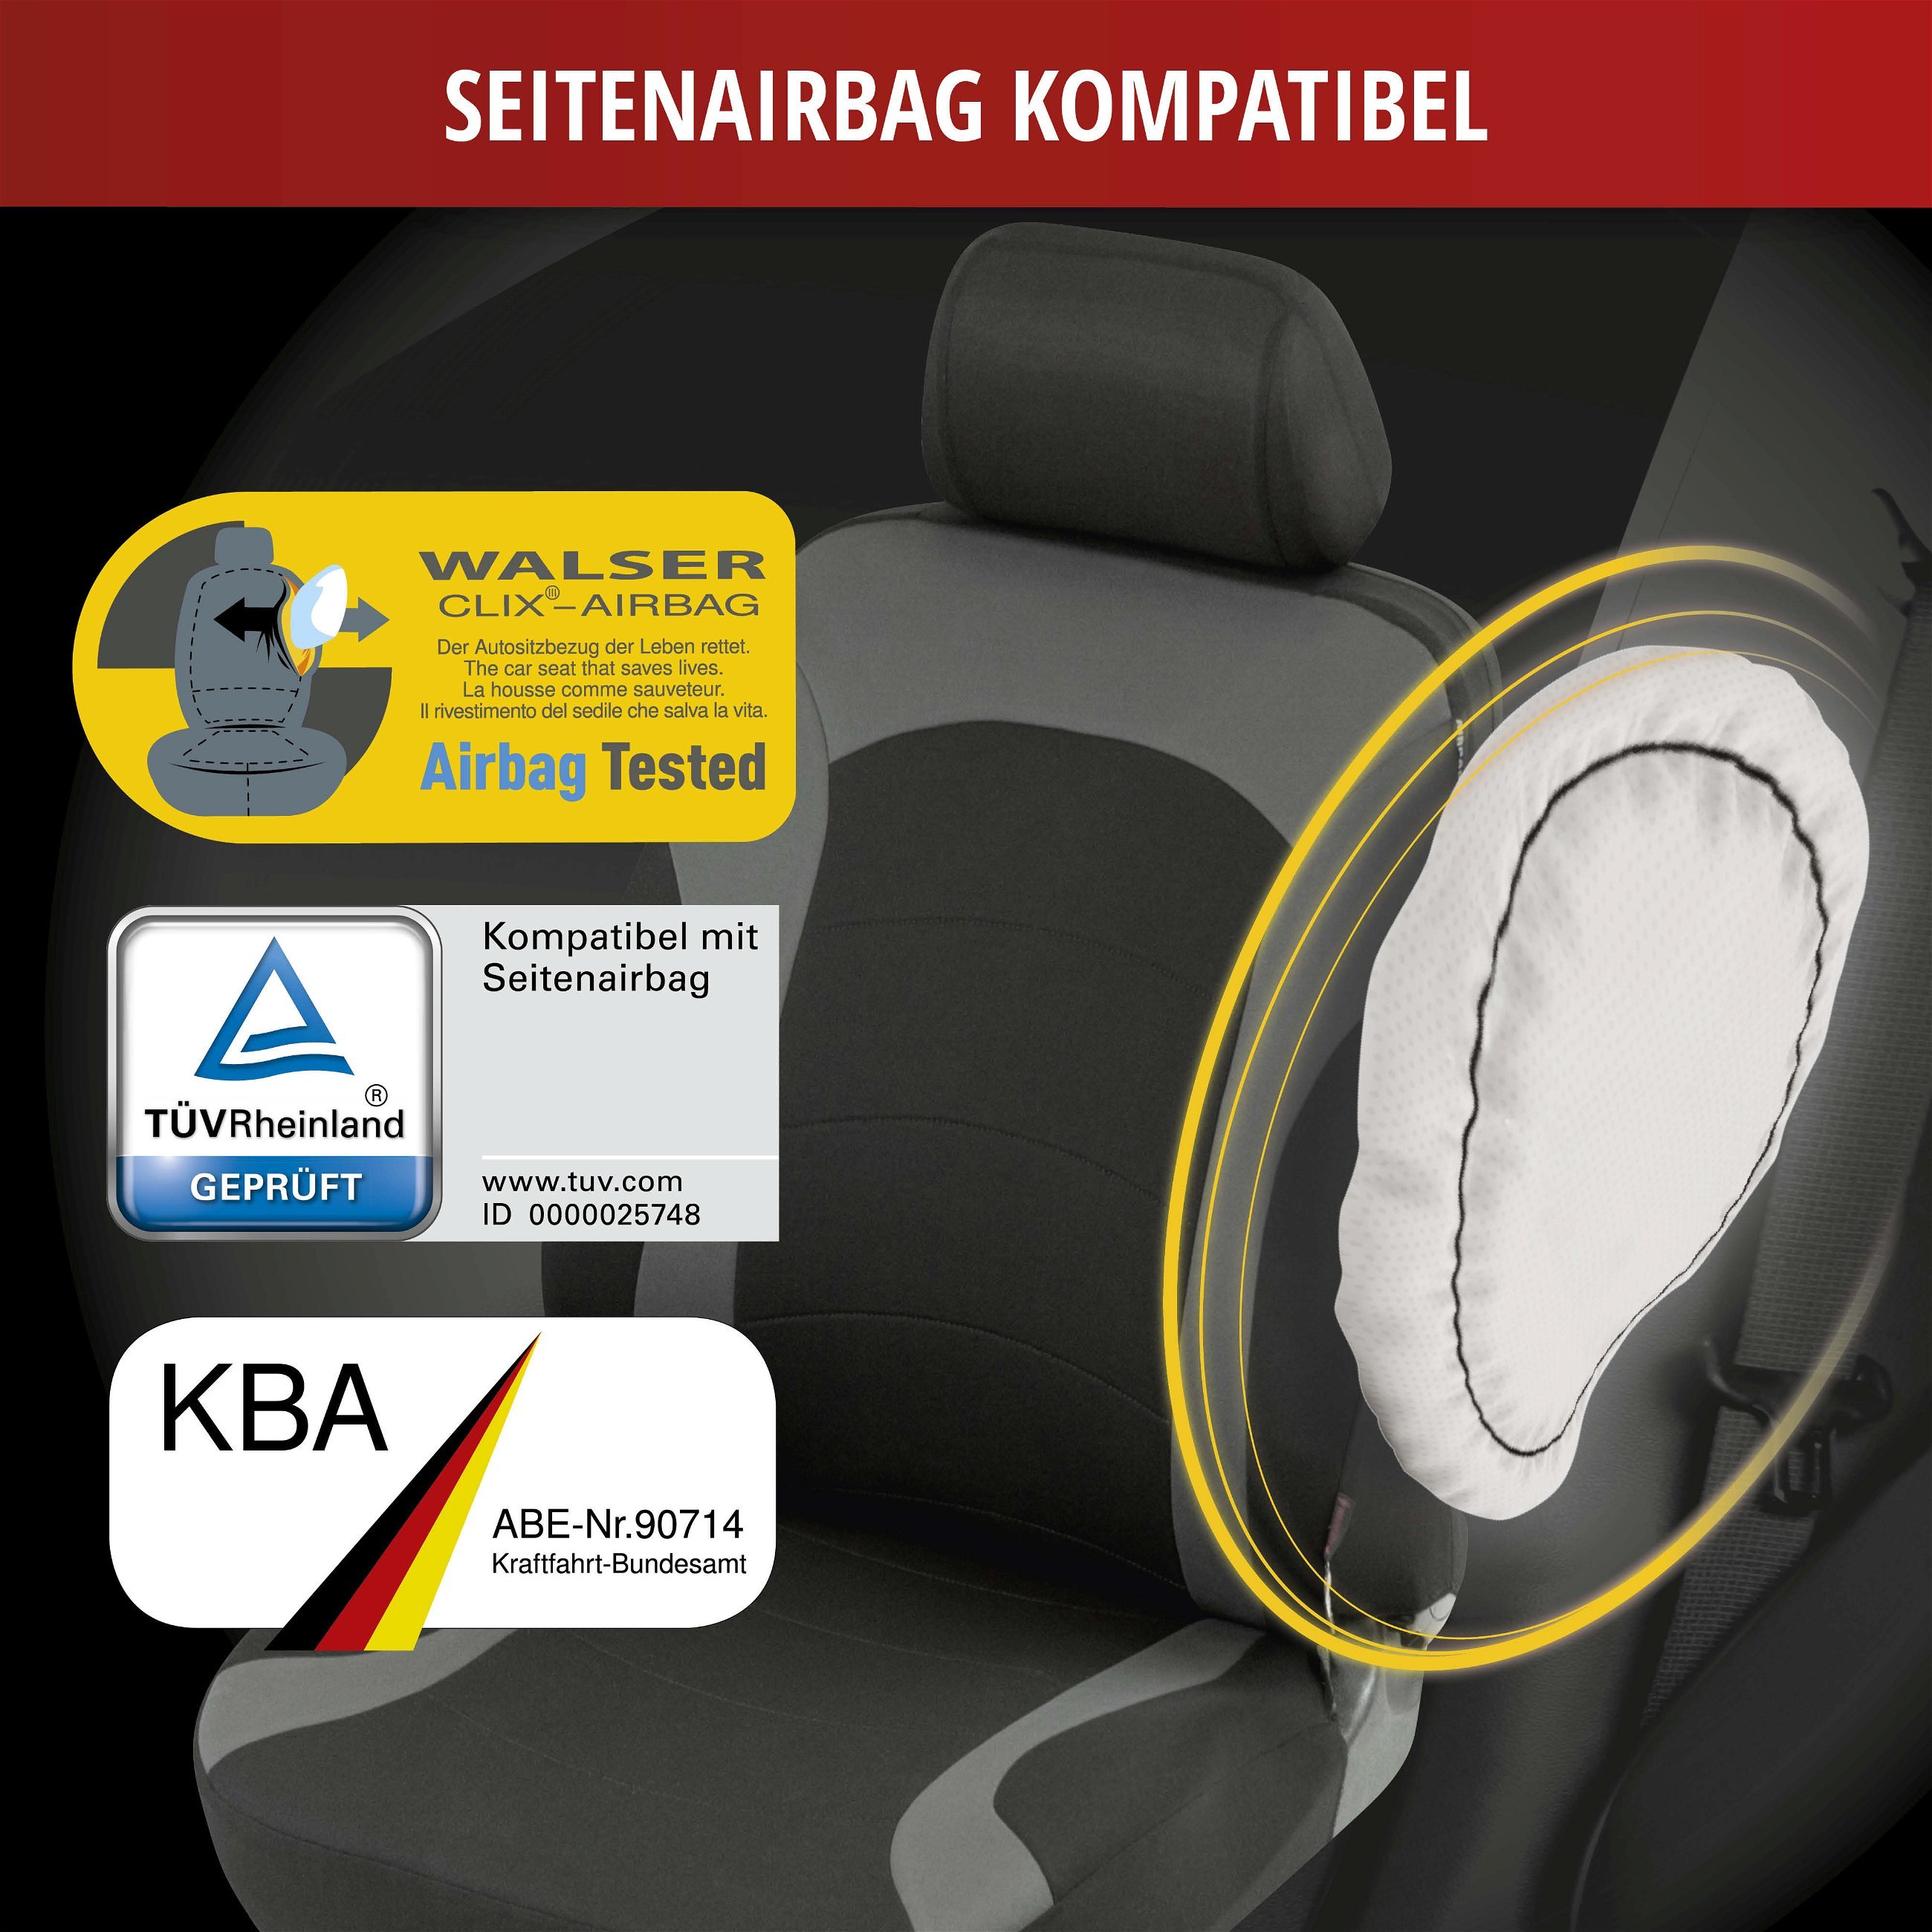 Sitzbezüge Schonbezüge für Opel Astra J Sports Tourer schwarz-blau